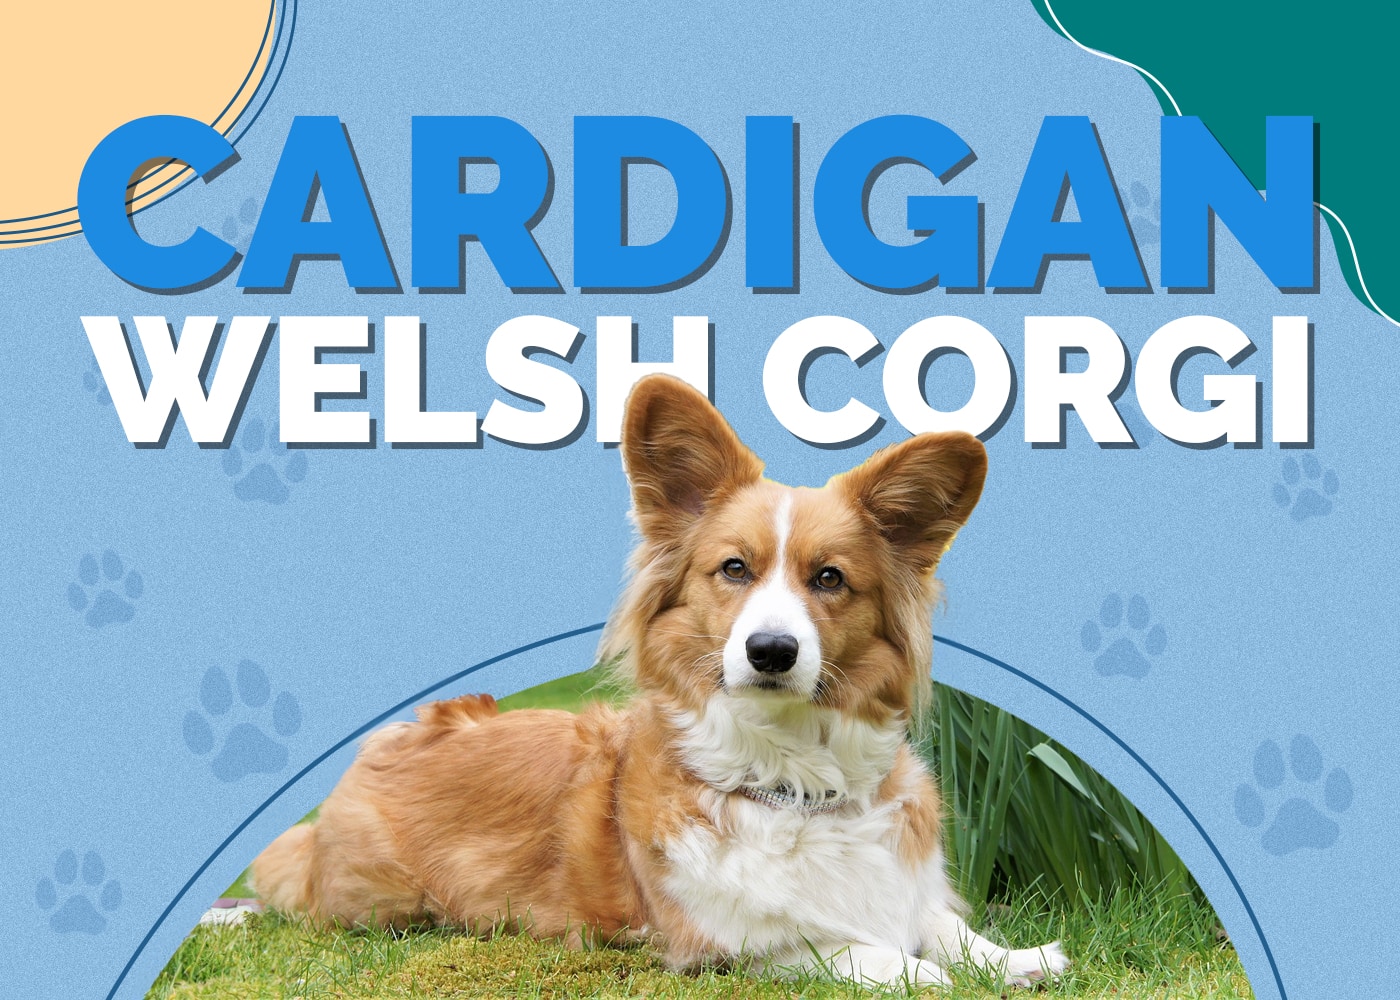 Cardigan Welsh Corgi Dog